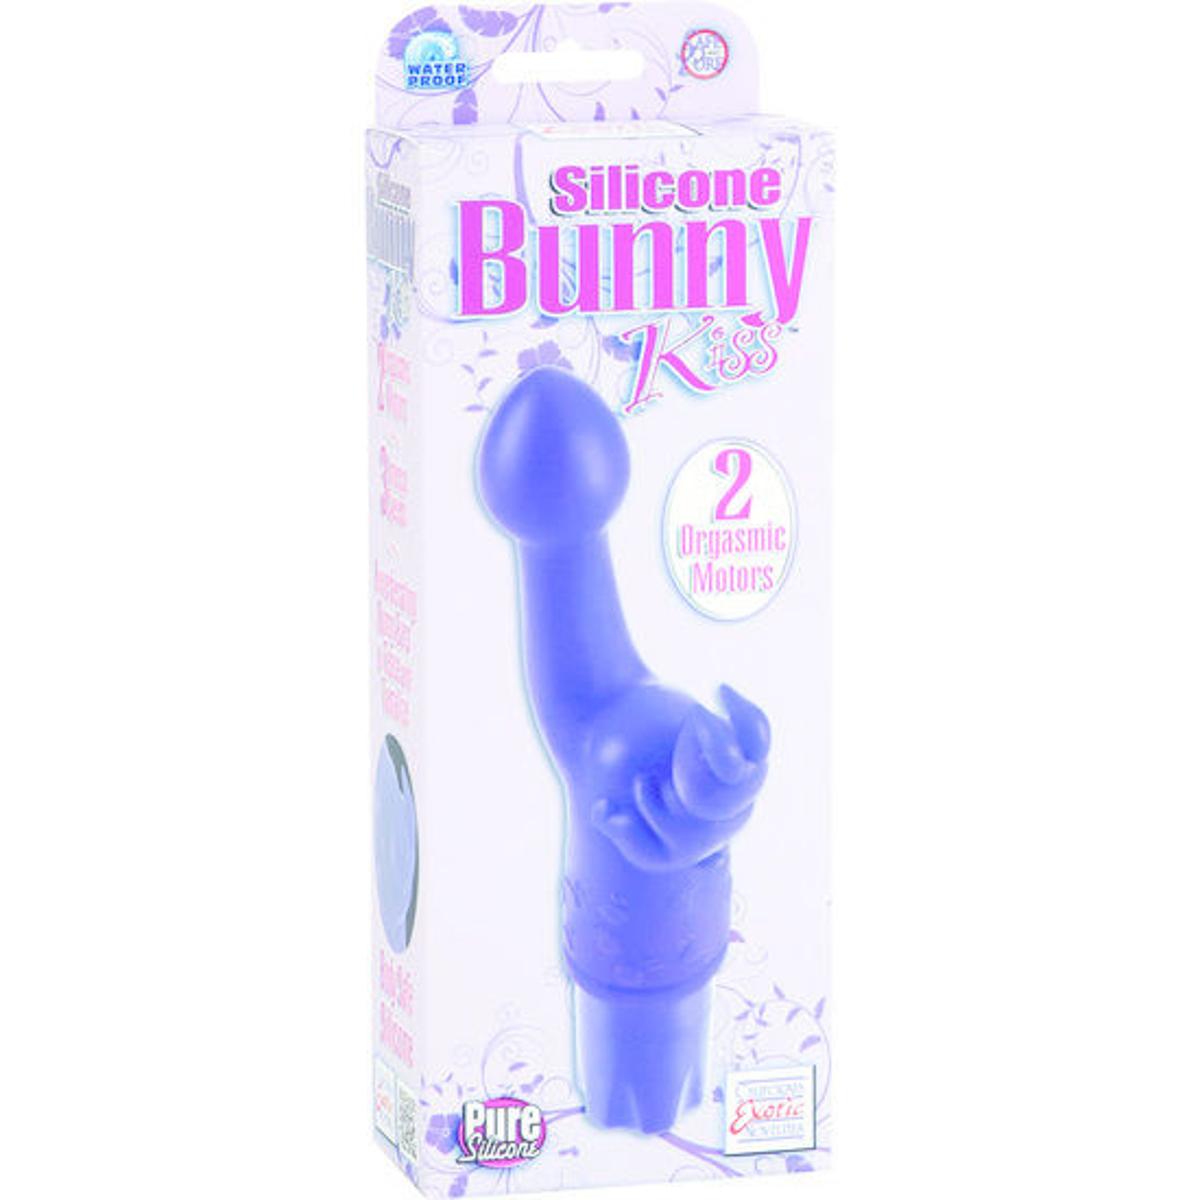 Rabbitvibrator "Bunny Kiss" - OH MY! FANTASY